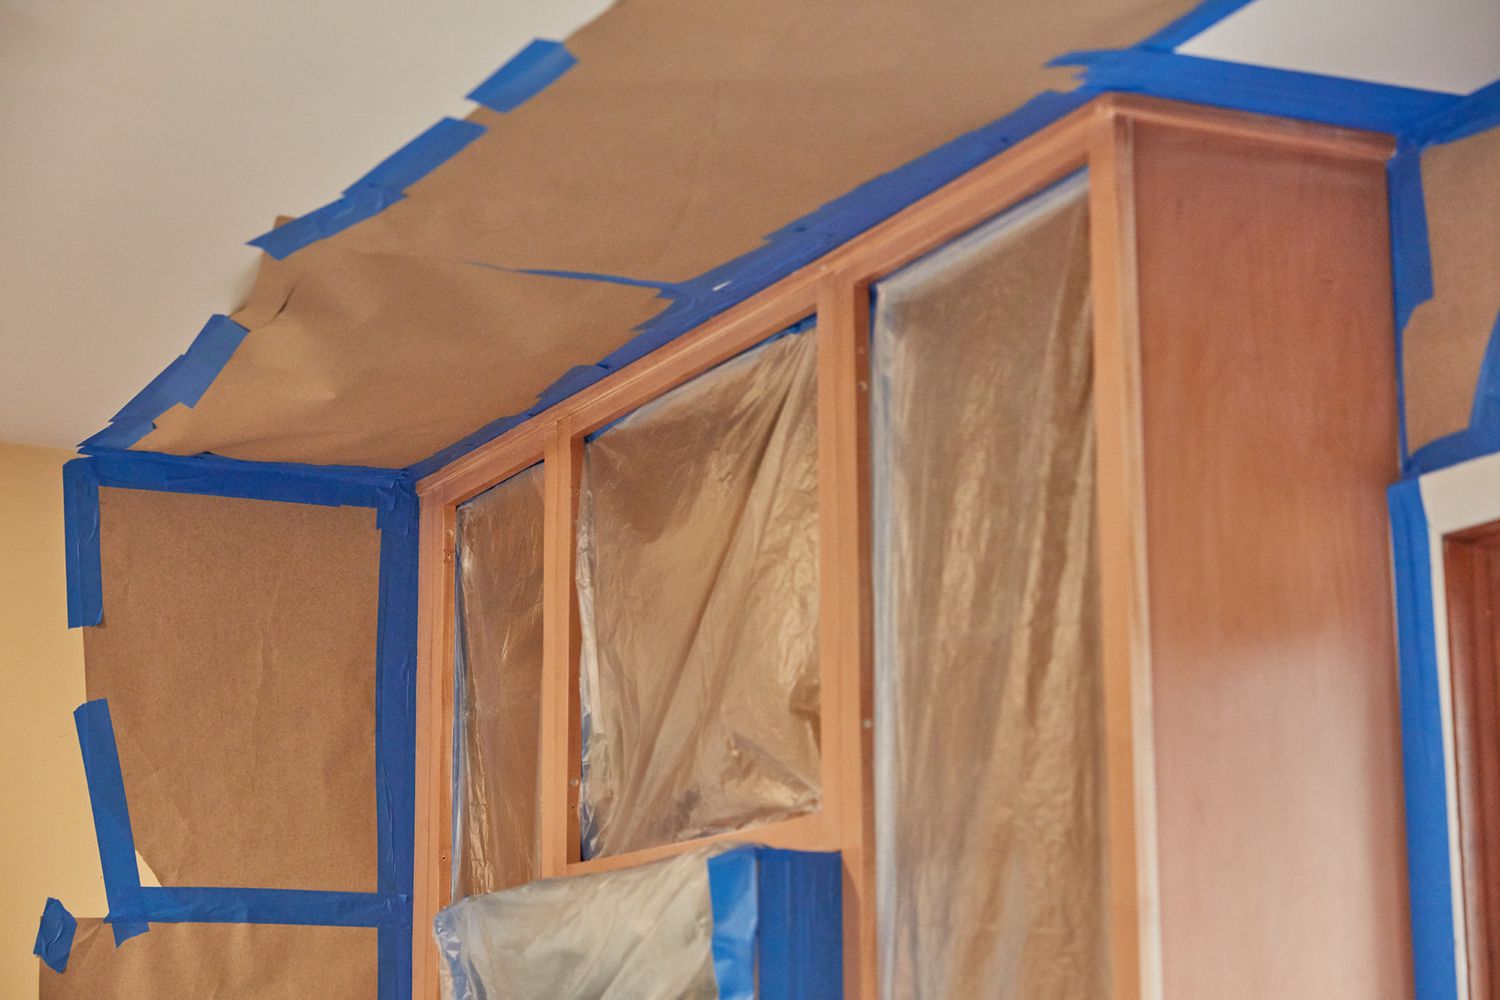 Paredes e teto da cozinha mascarados com fita de pintor para evitar que sejam pintados